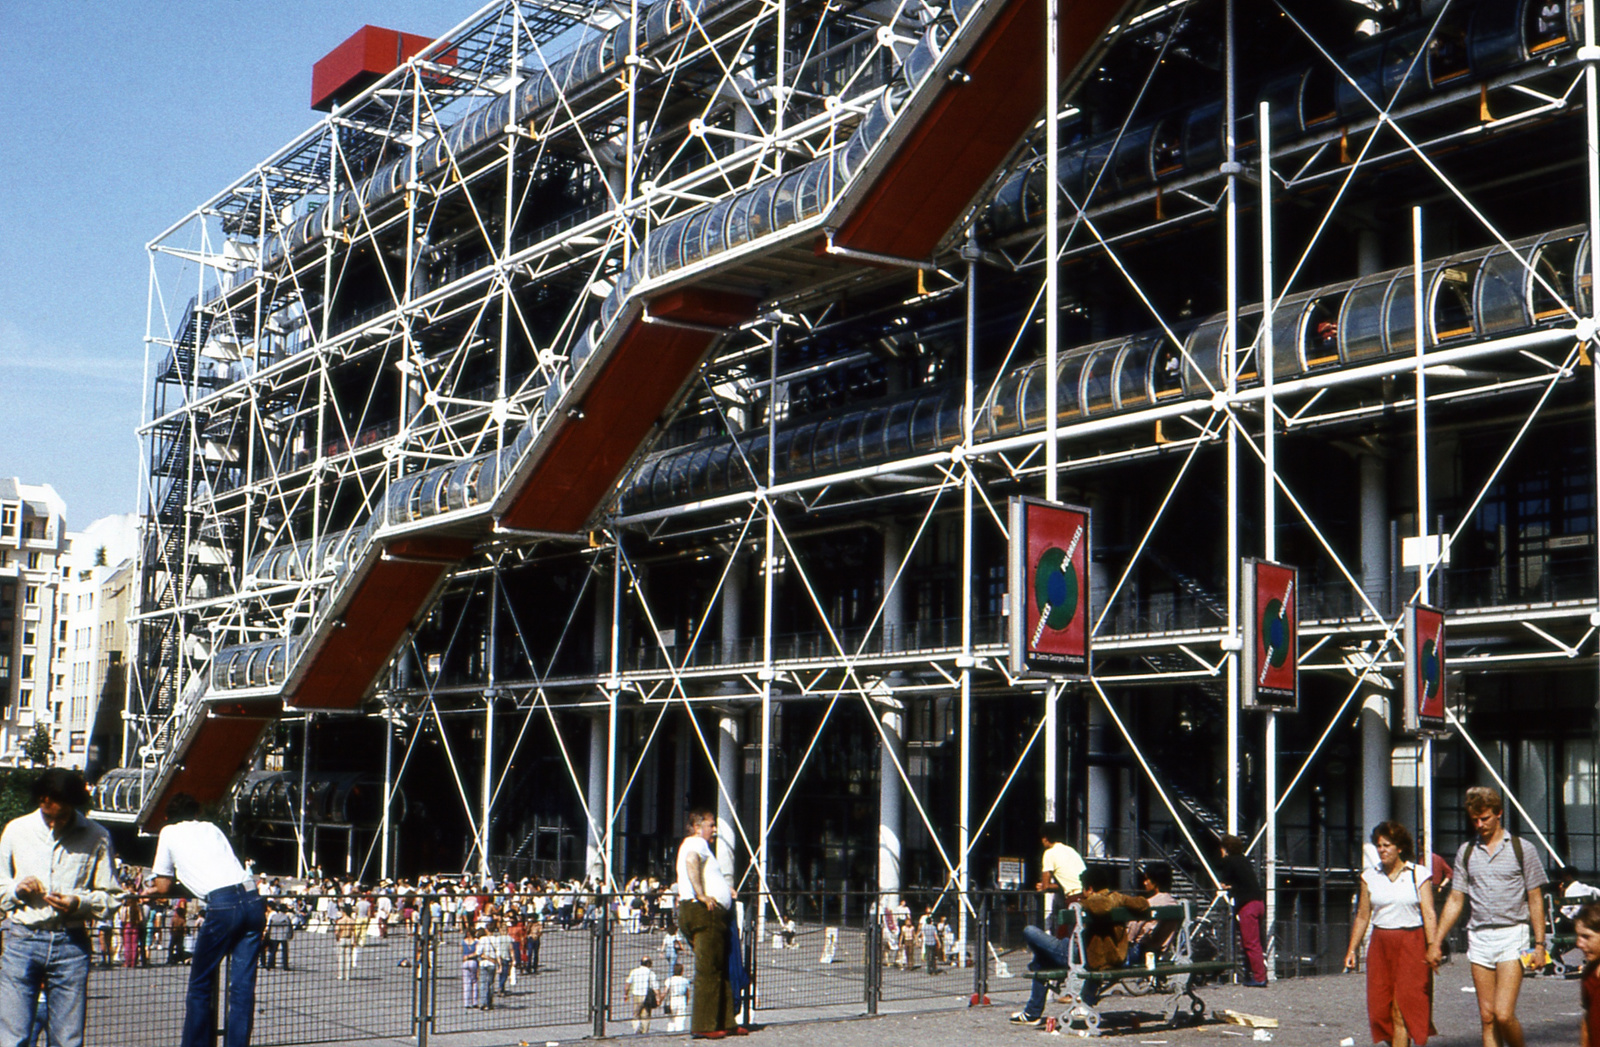 597 Párizs Pompidou központ